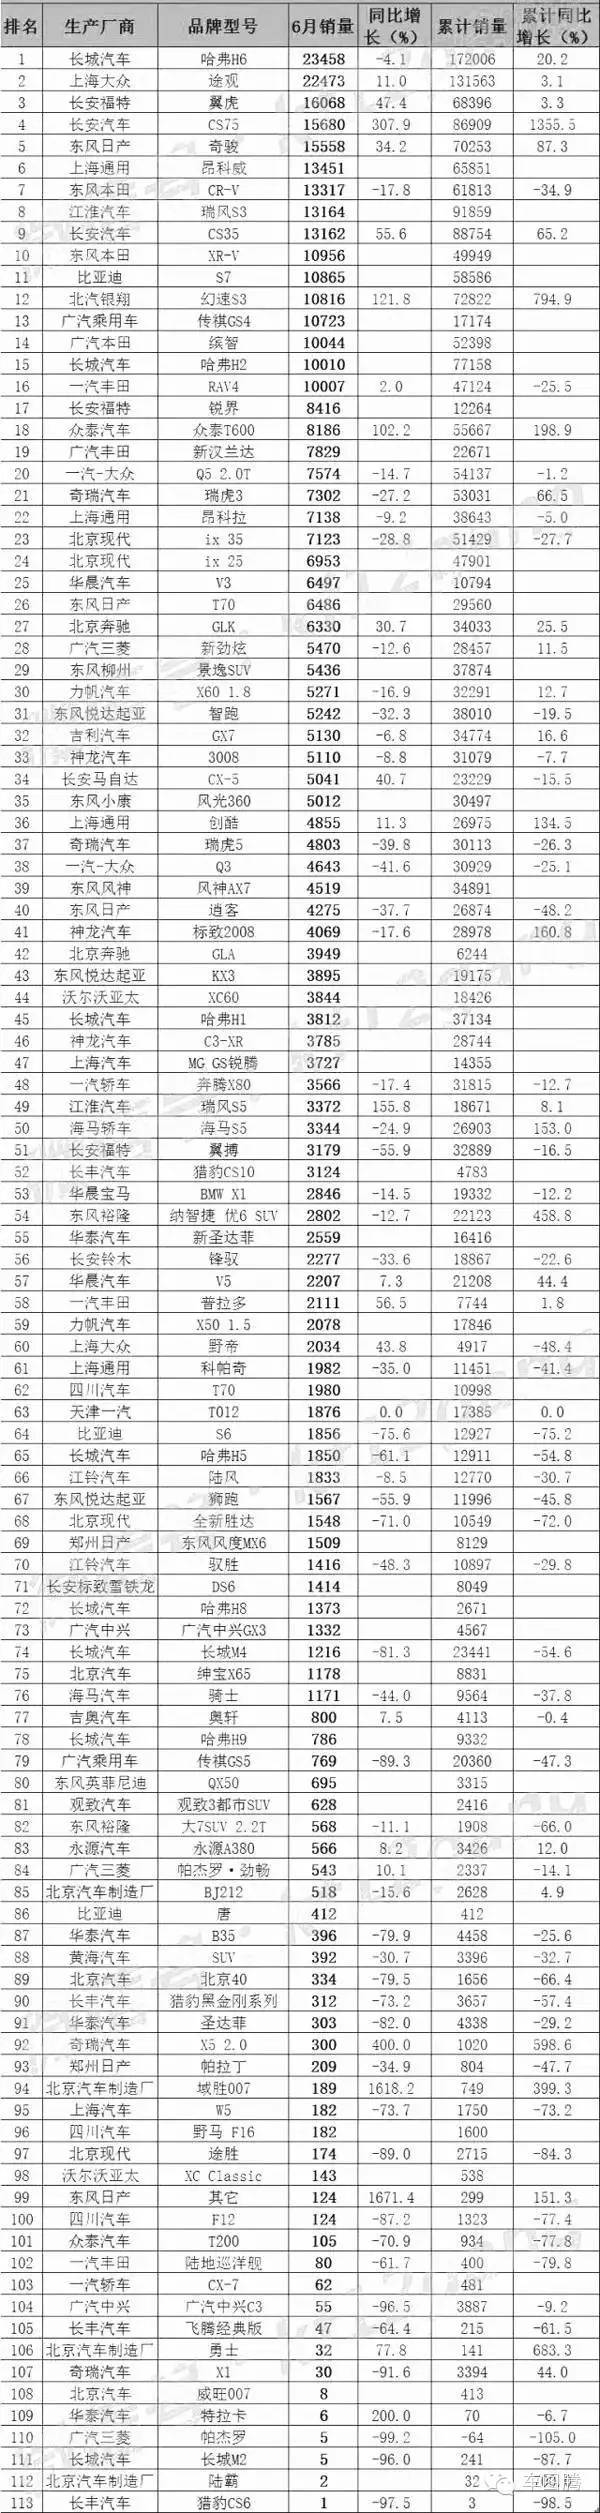 中国卡车销量排行2017_轿车销量排行榜中国_中国汽车品牌销量排行